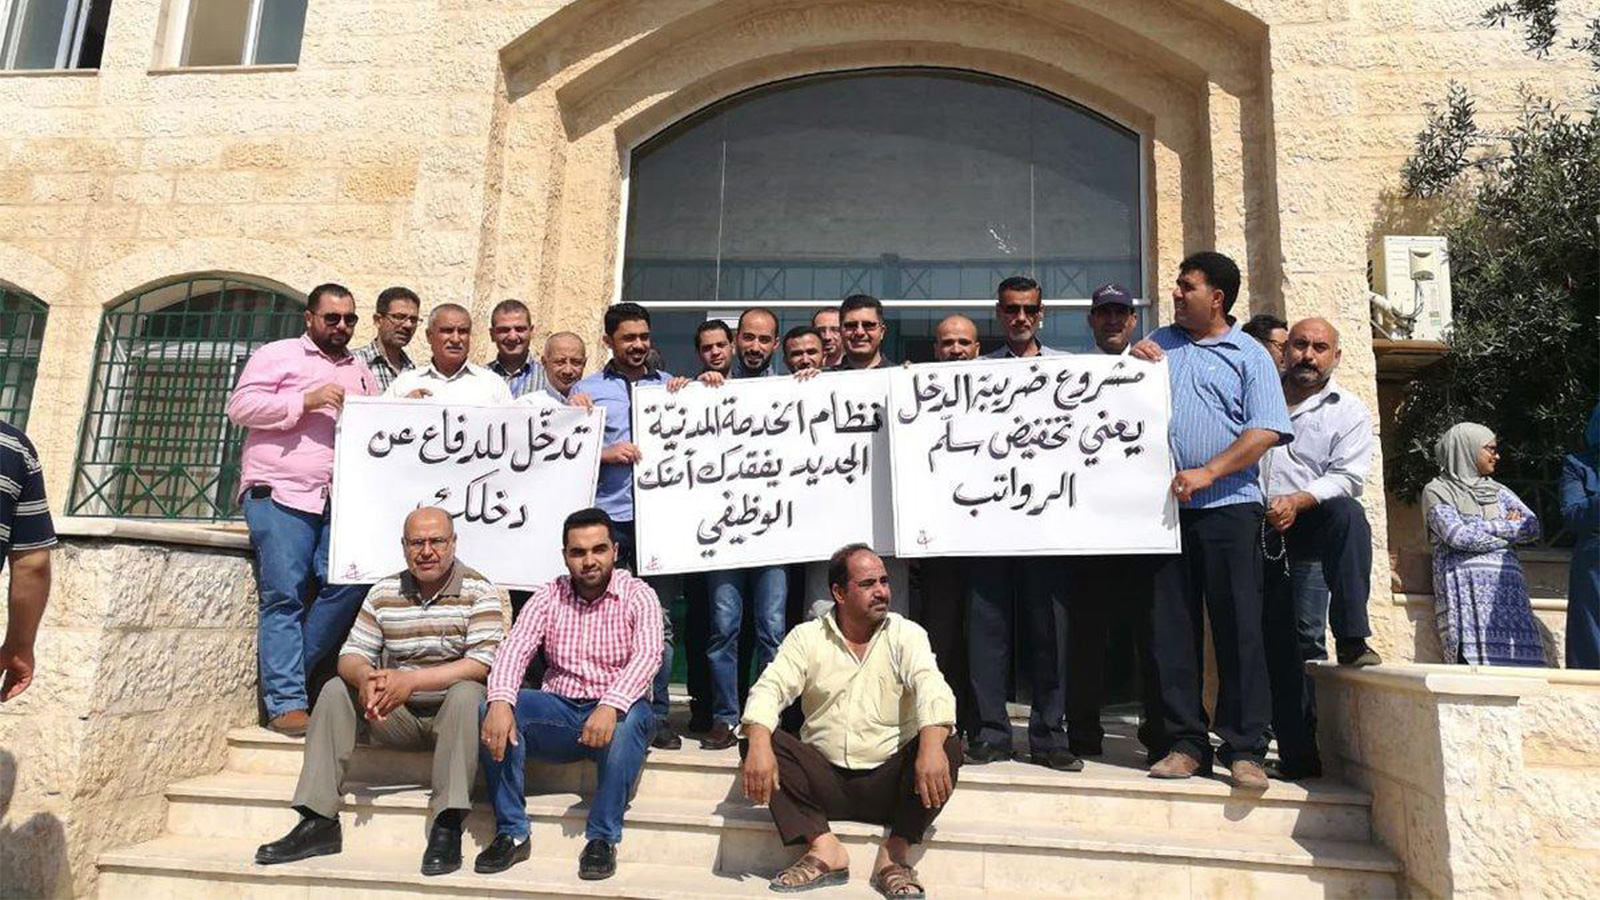 ‪موظفون مشاركون في الإضراب يرفعون لافتات رافضة لتعديلات على قانون ضريبة الدخل‬  (الصحافة الأردنية)